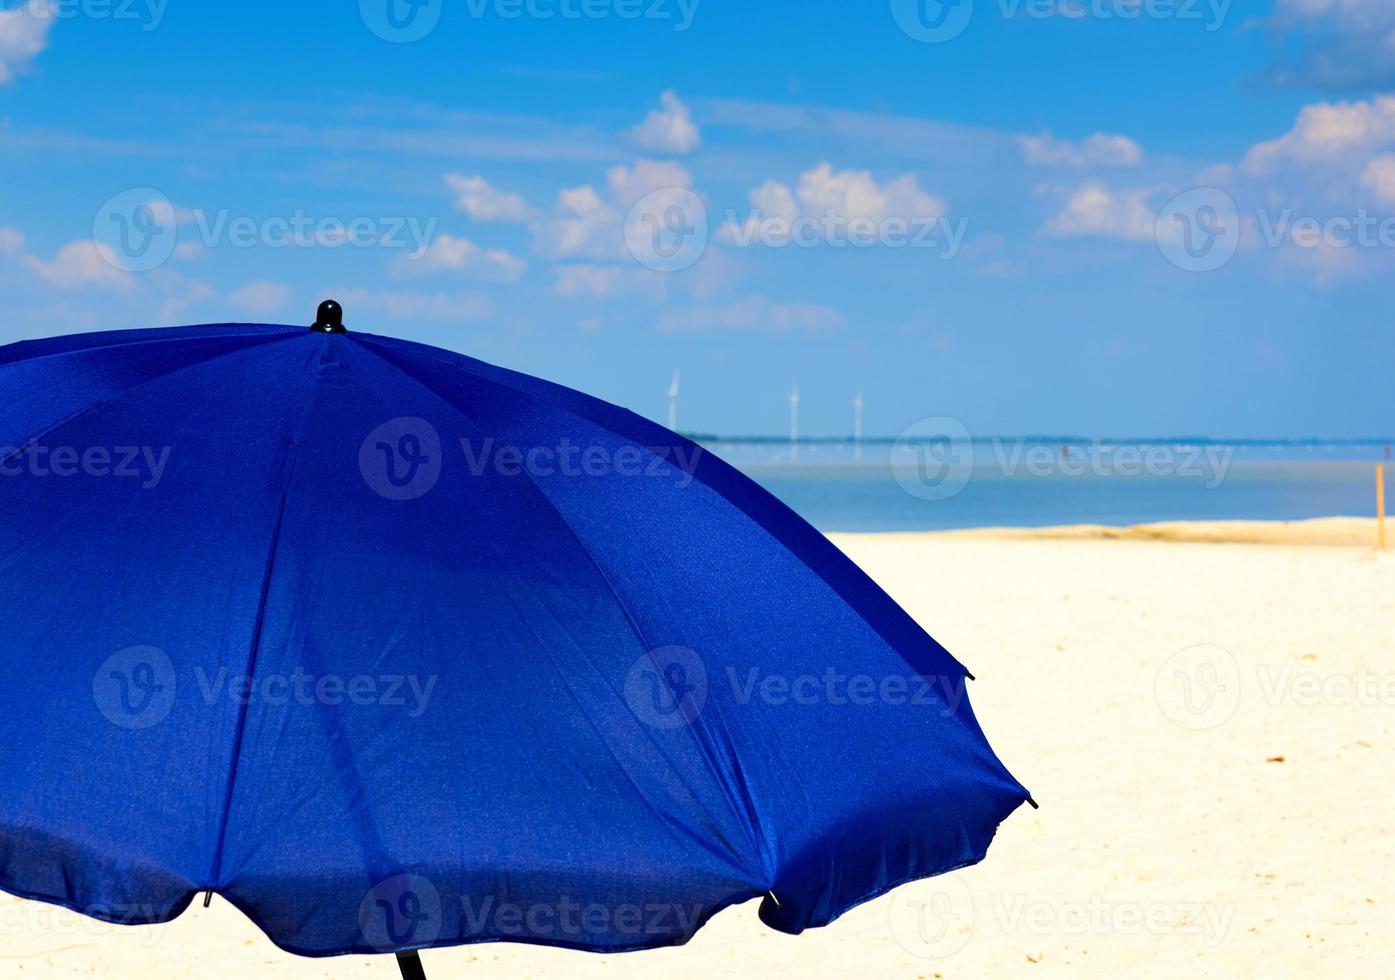 paraguas azul textil en el fondo del mar y el cielo con nubes blancas foto